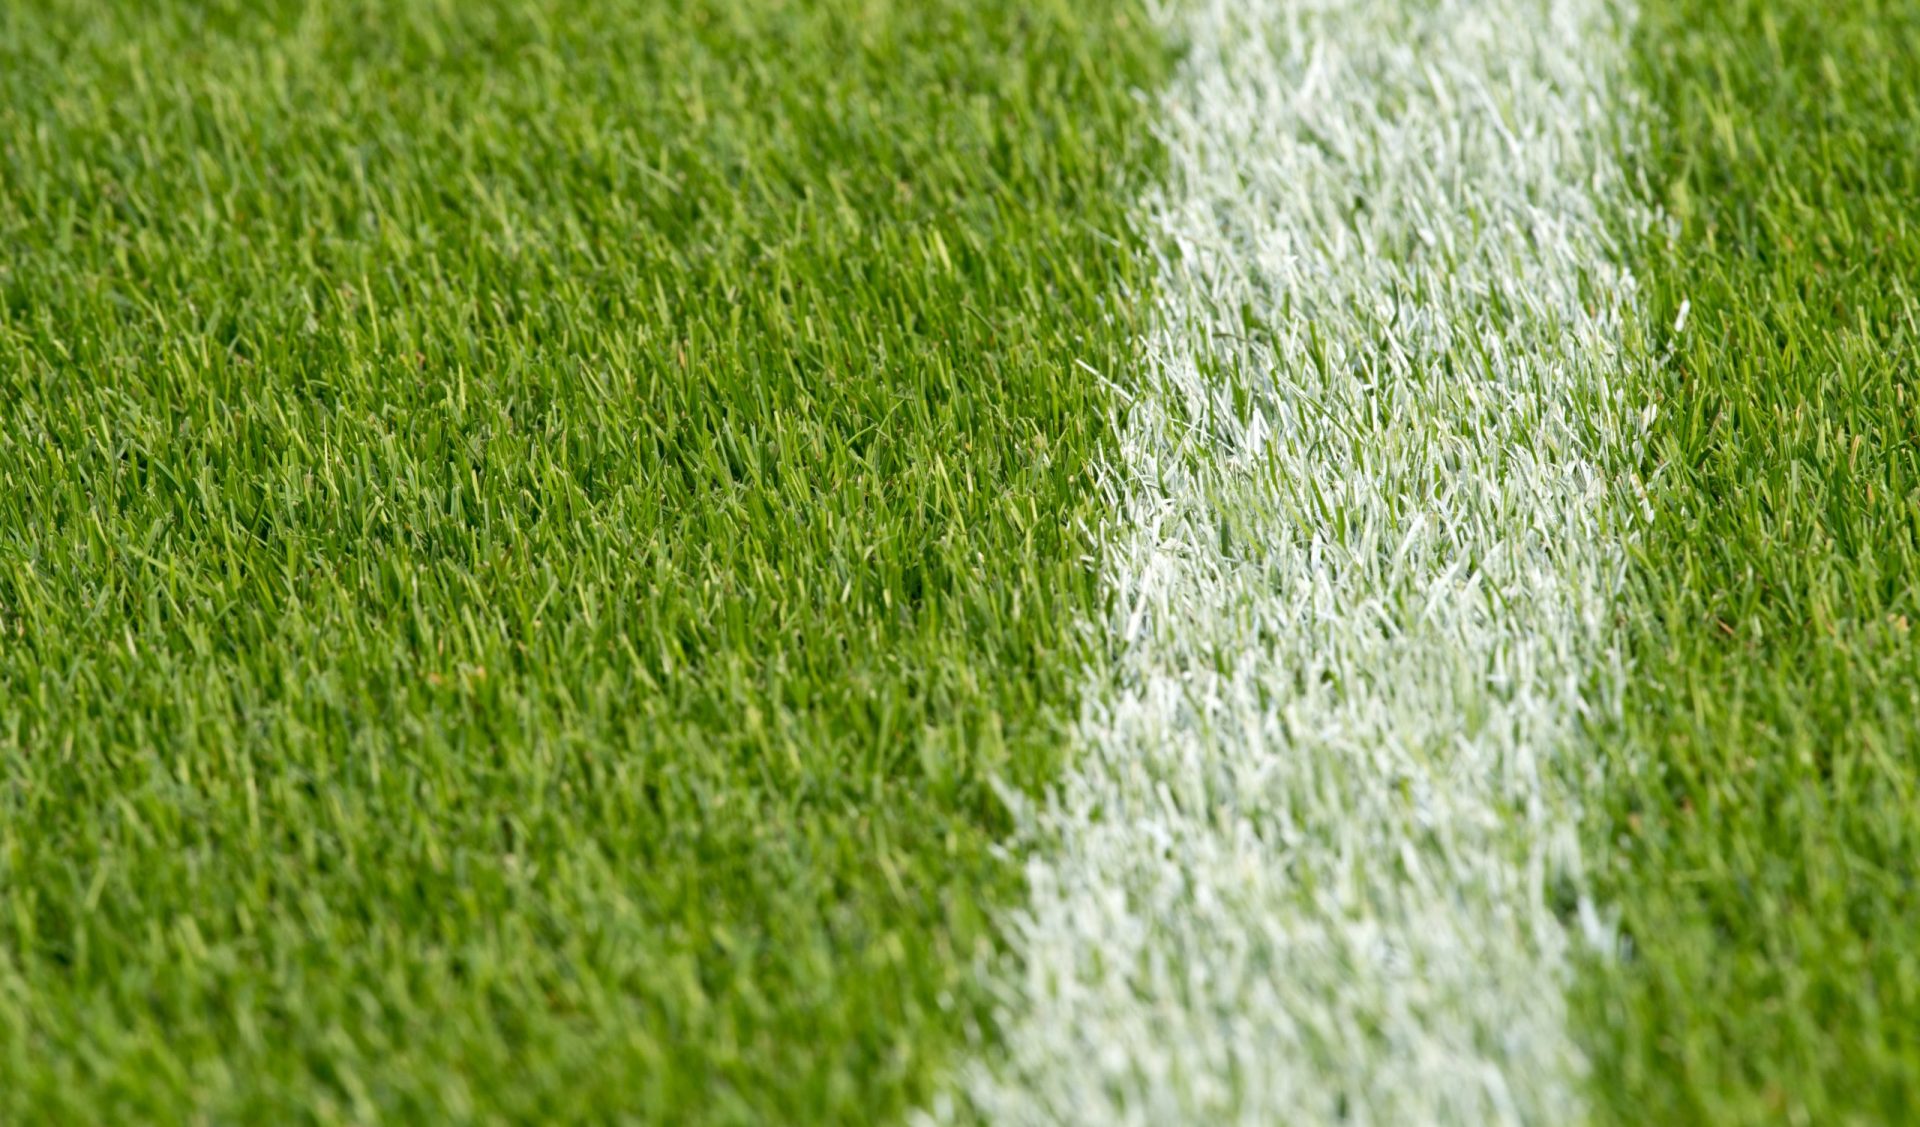 BVB Landscaping Rotterdam Feyenoord grasmat voetbalveld sportveld golfbaan aanleg onderhoud dressgrond